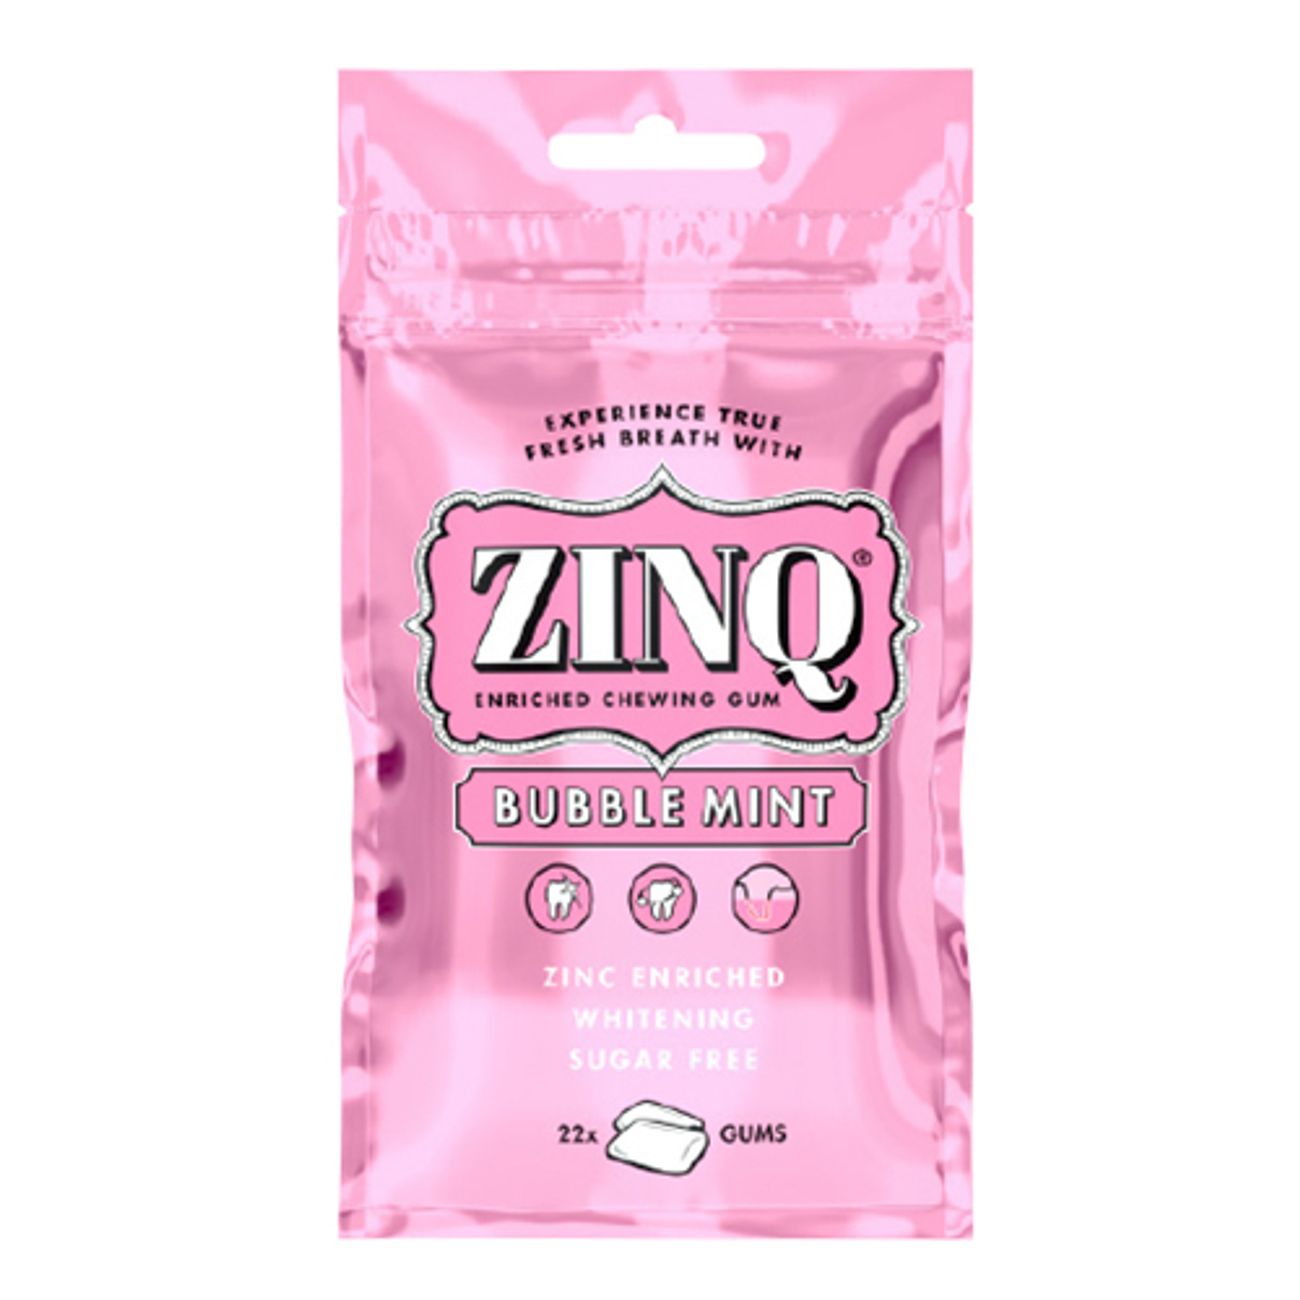 zinq-bubblemint-1